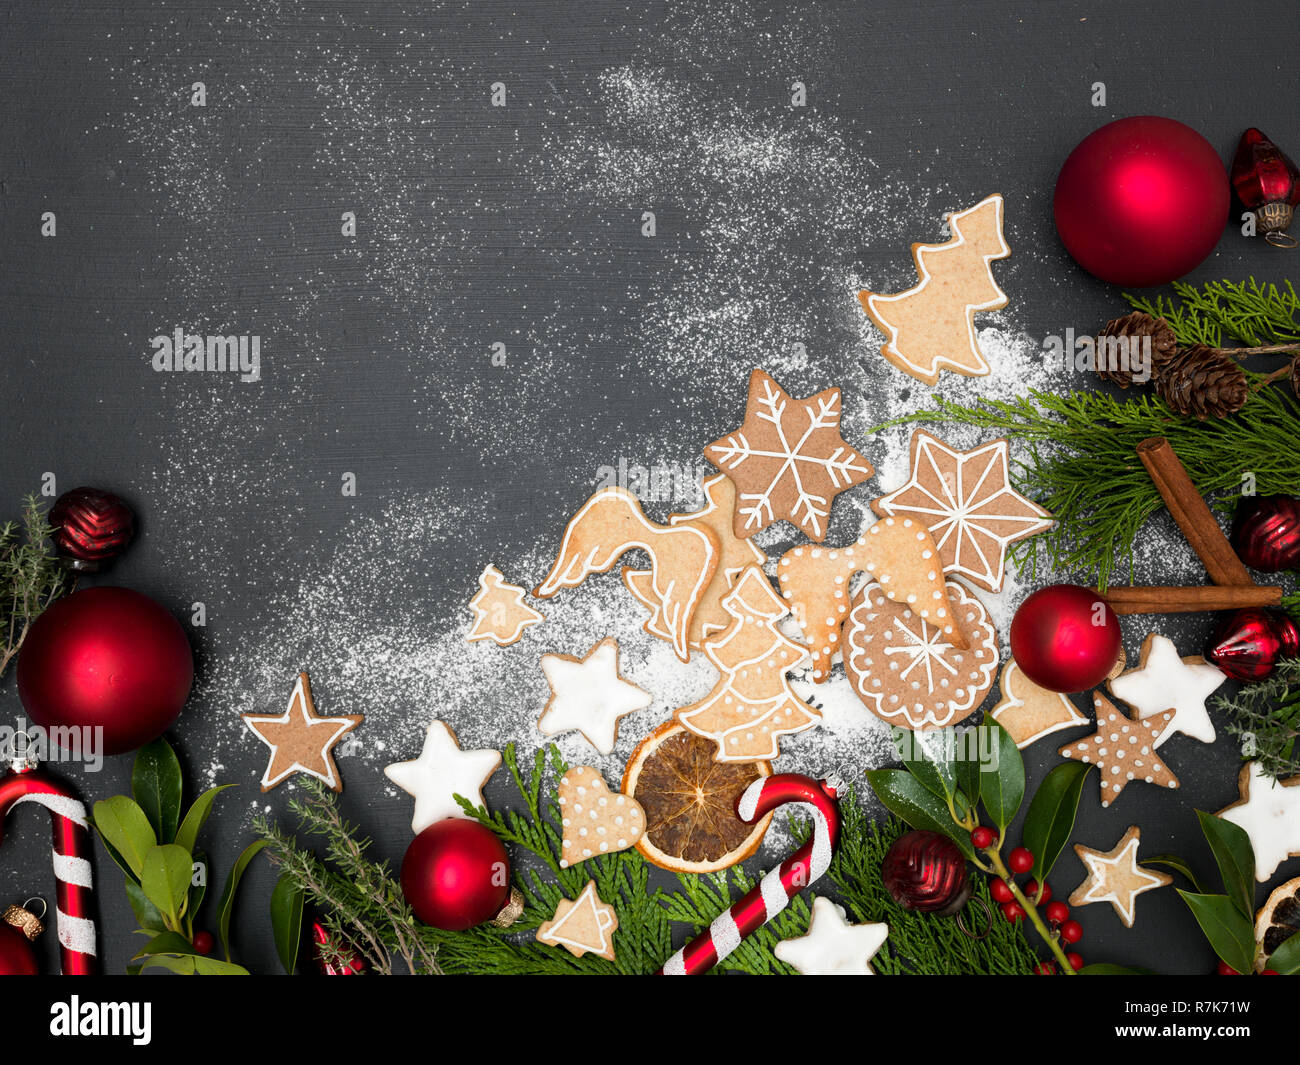 Articoli Di Natale.Sfondo Di Natale Con I Cookie E Altri Articoli Natalizi Su Sfondo Nero Foto Stock Alamy